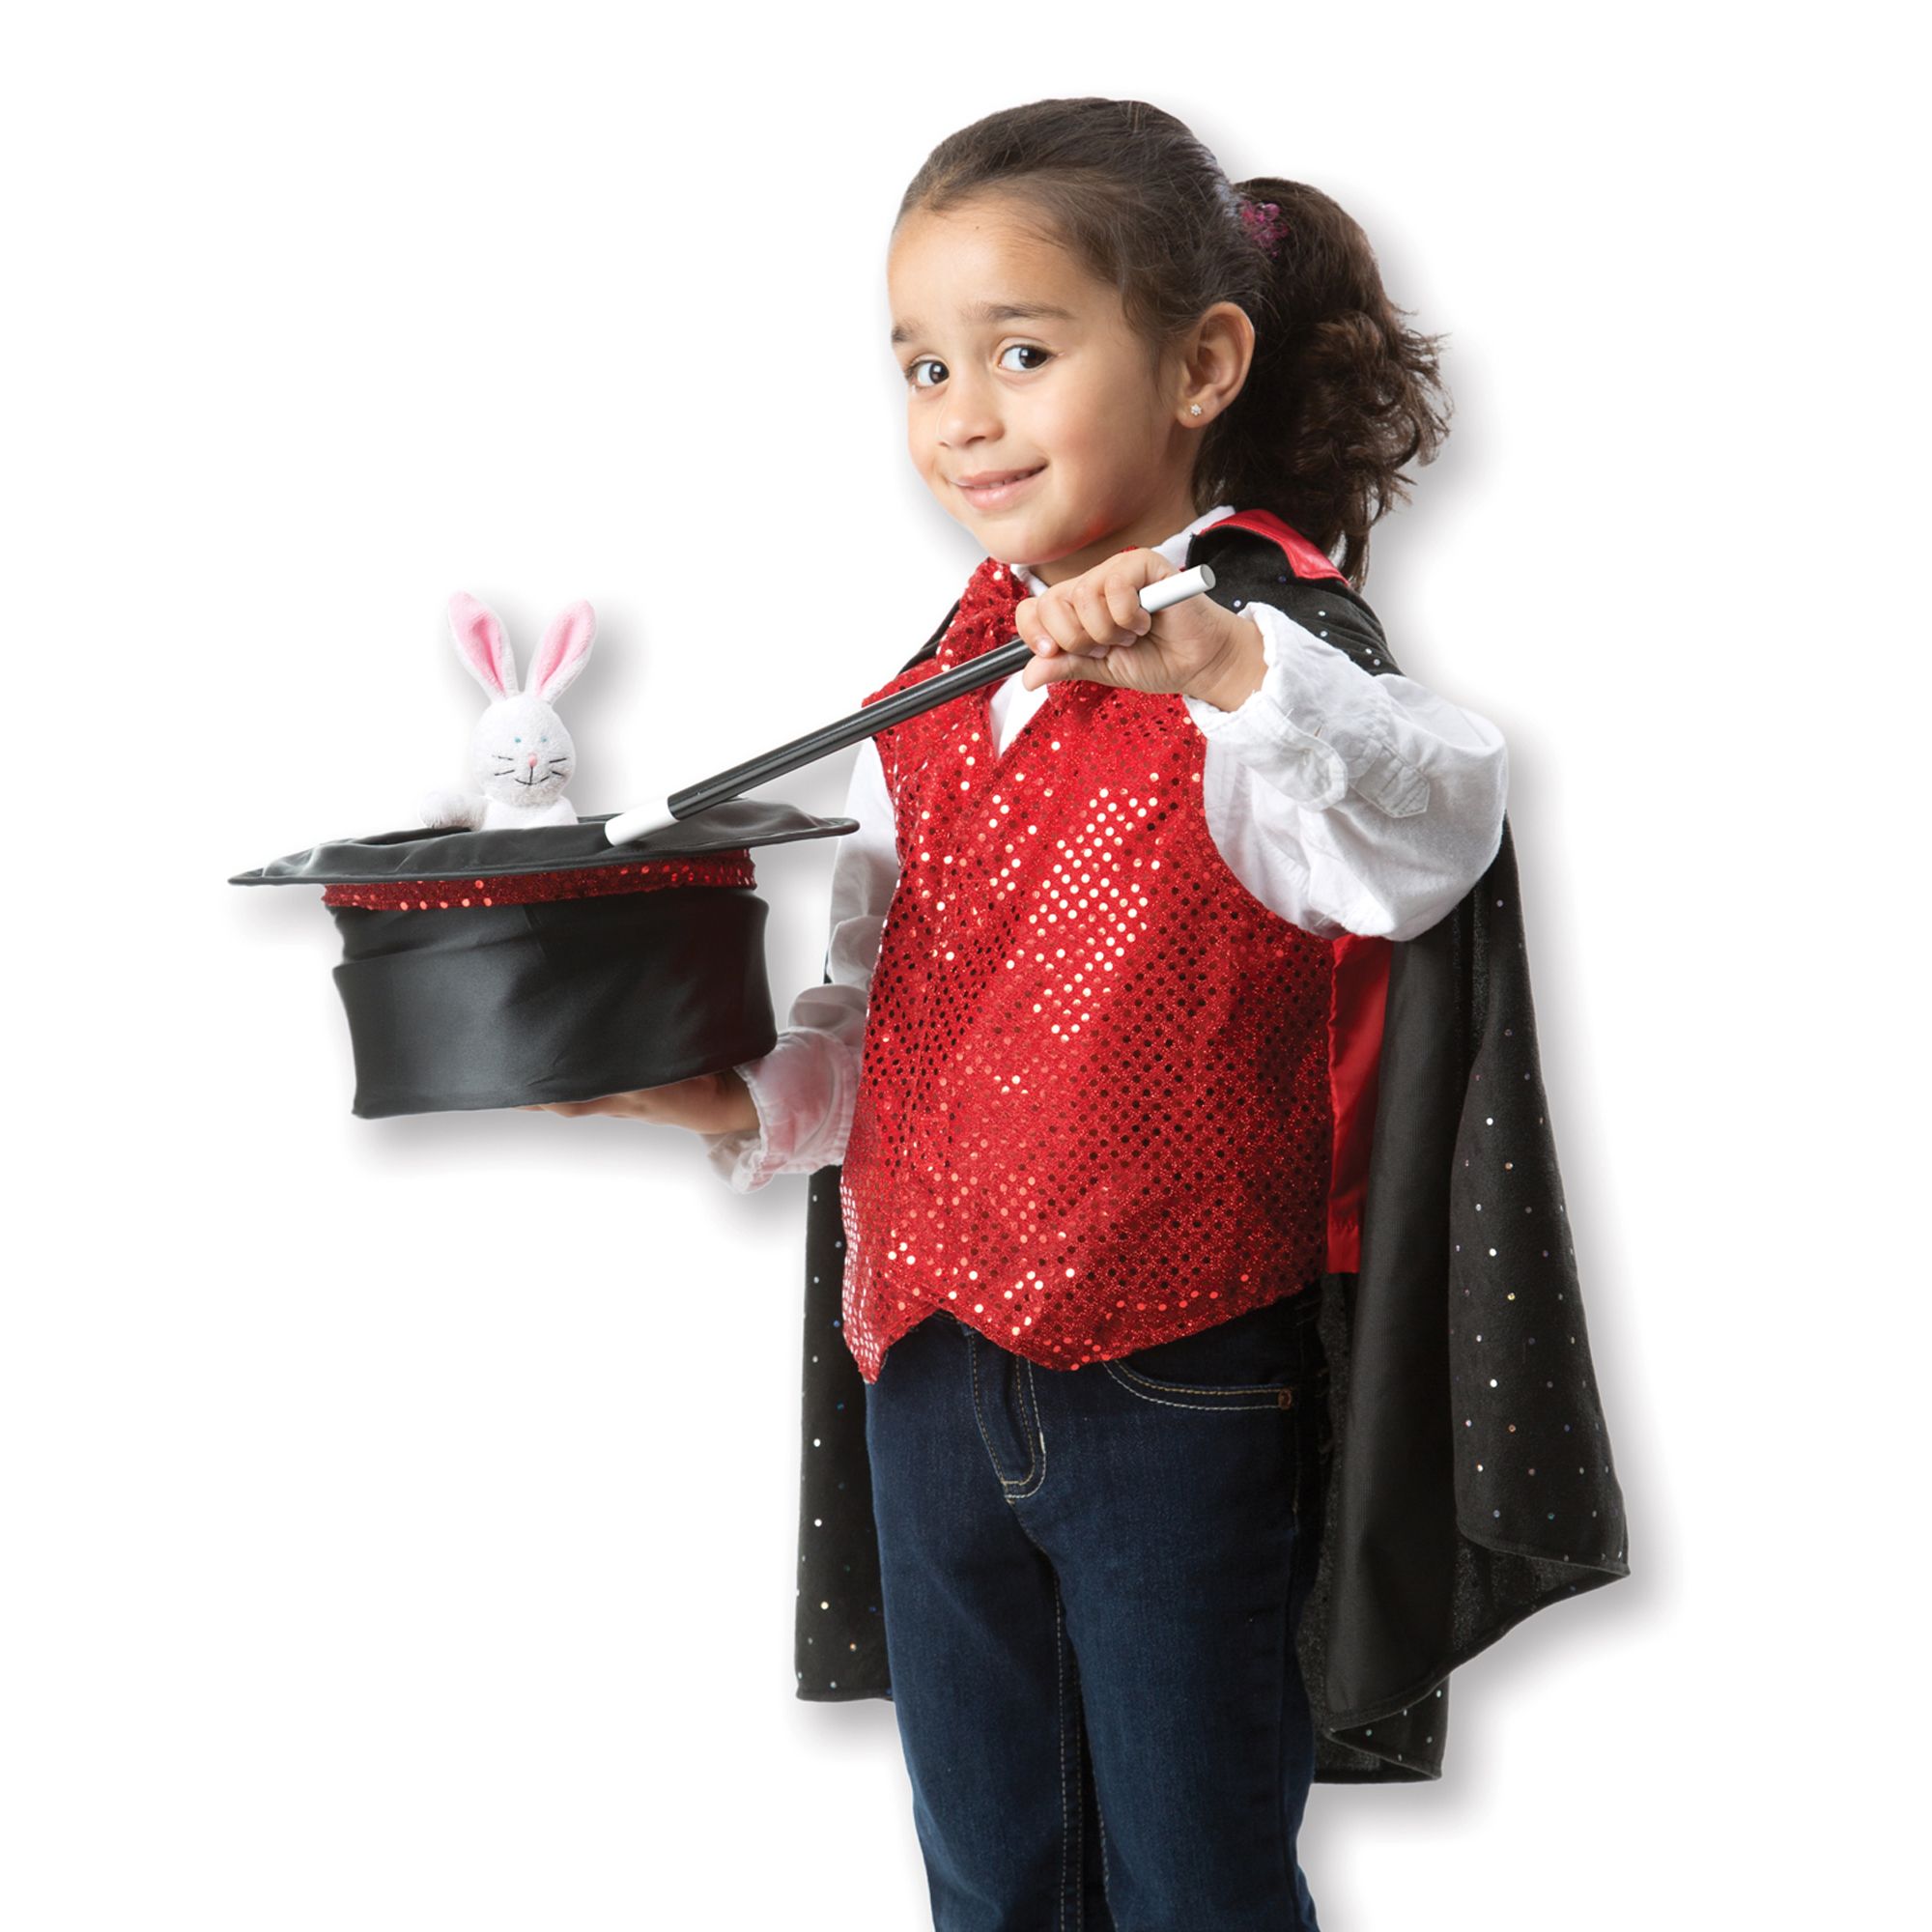 Alaiyaky Costume de magicien pour enfants et adultes - Ensemble de